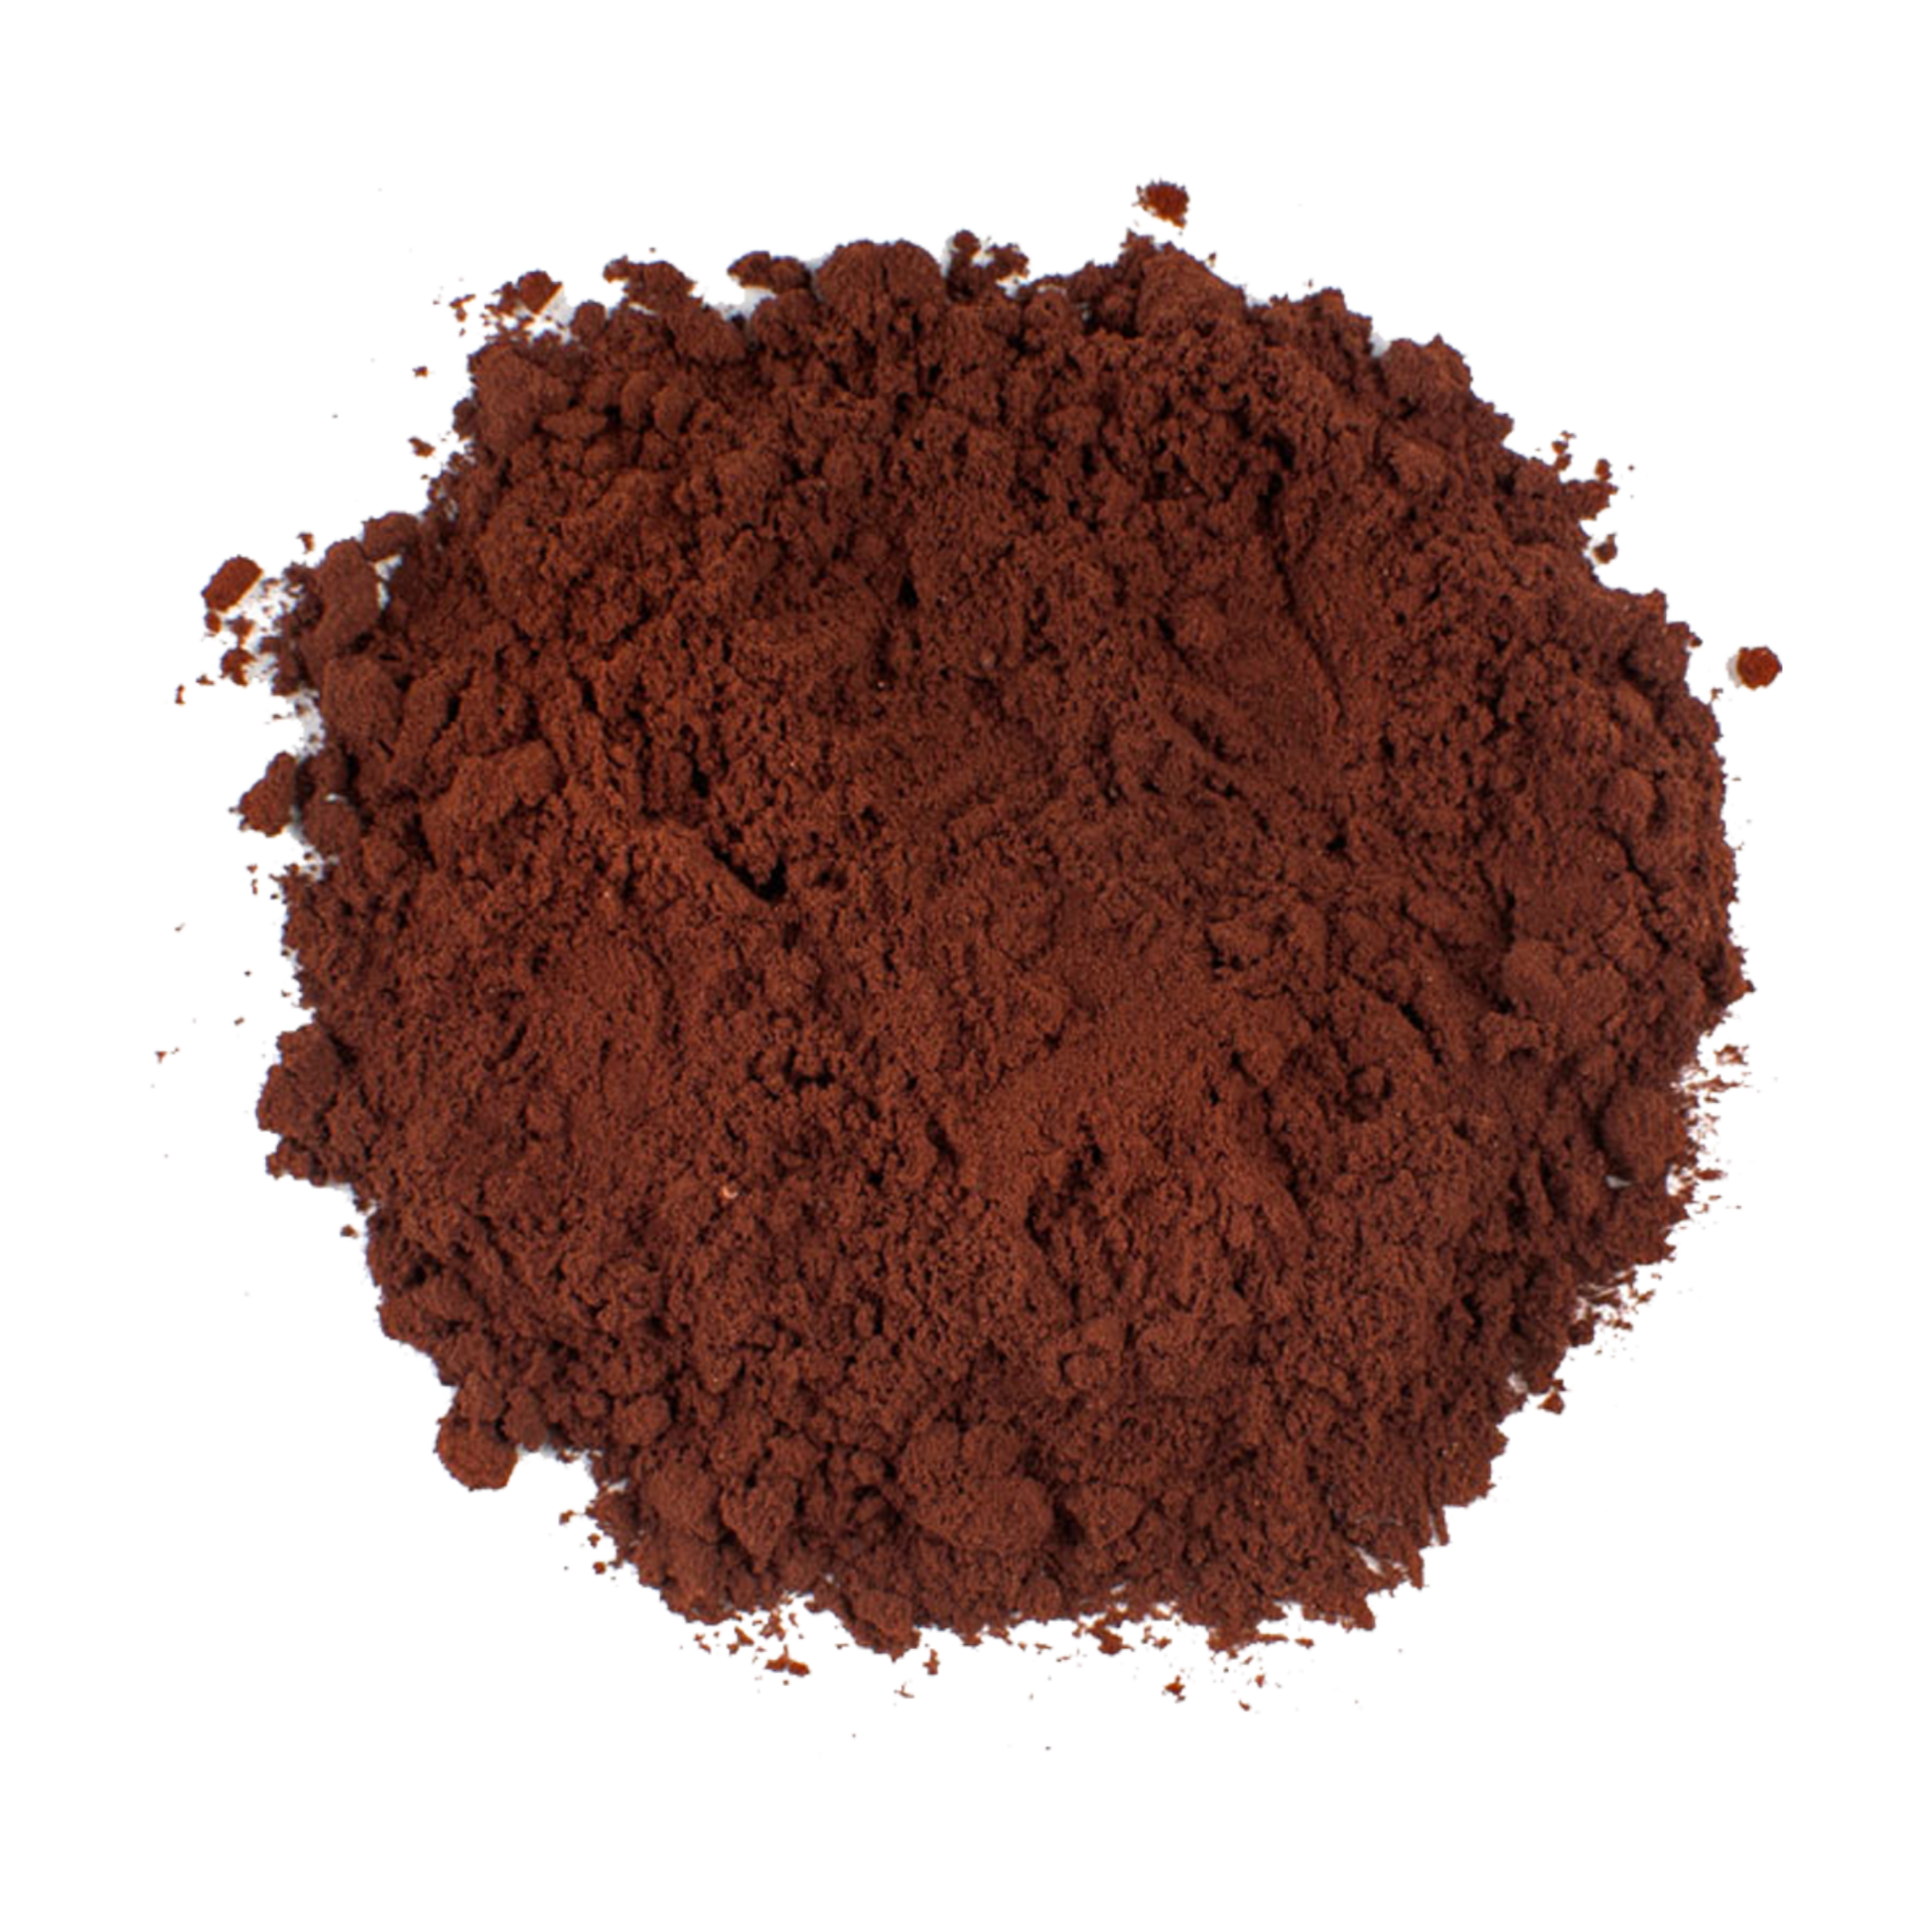 Bensdorp 22/24 Monroe Cocoa Powder - 50 lb